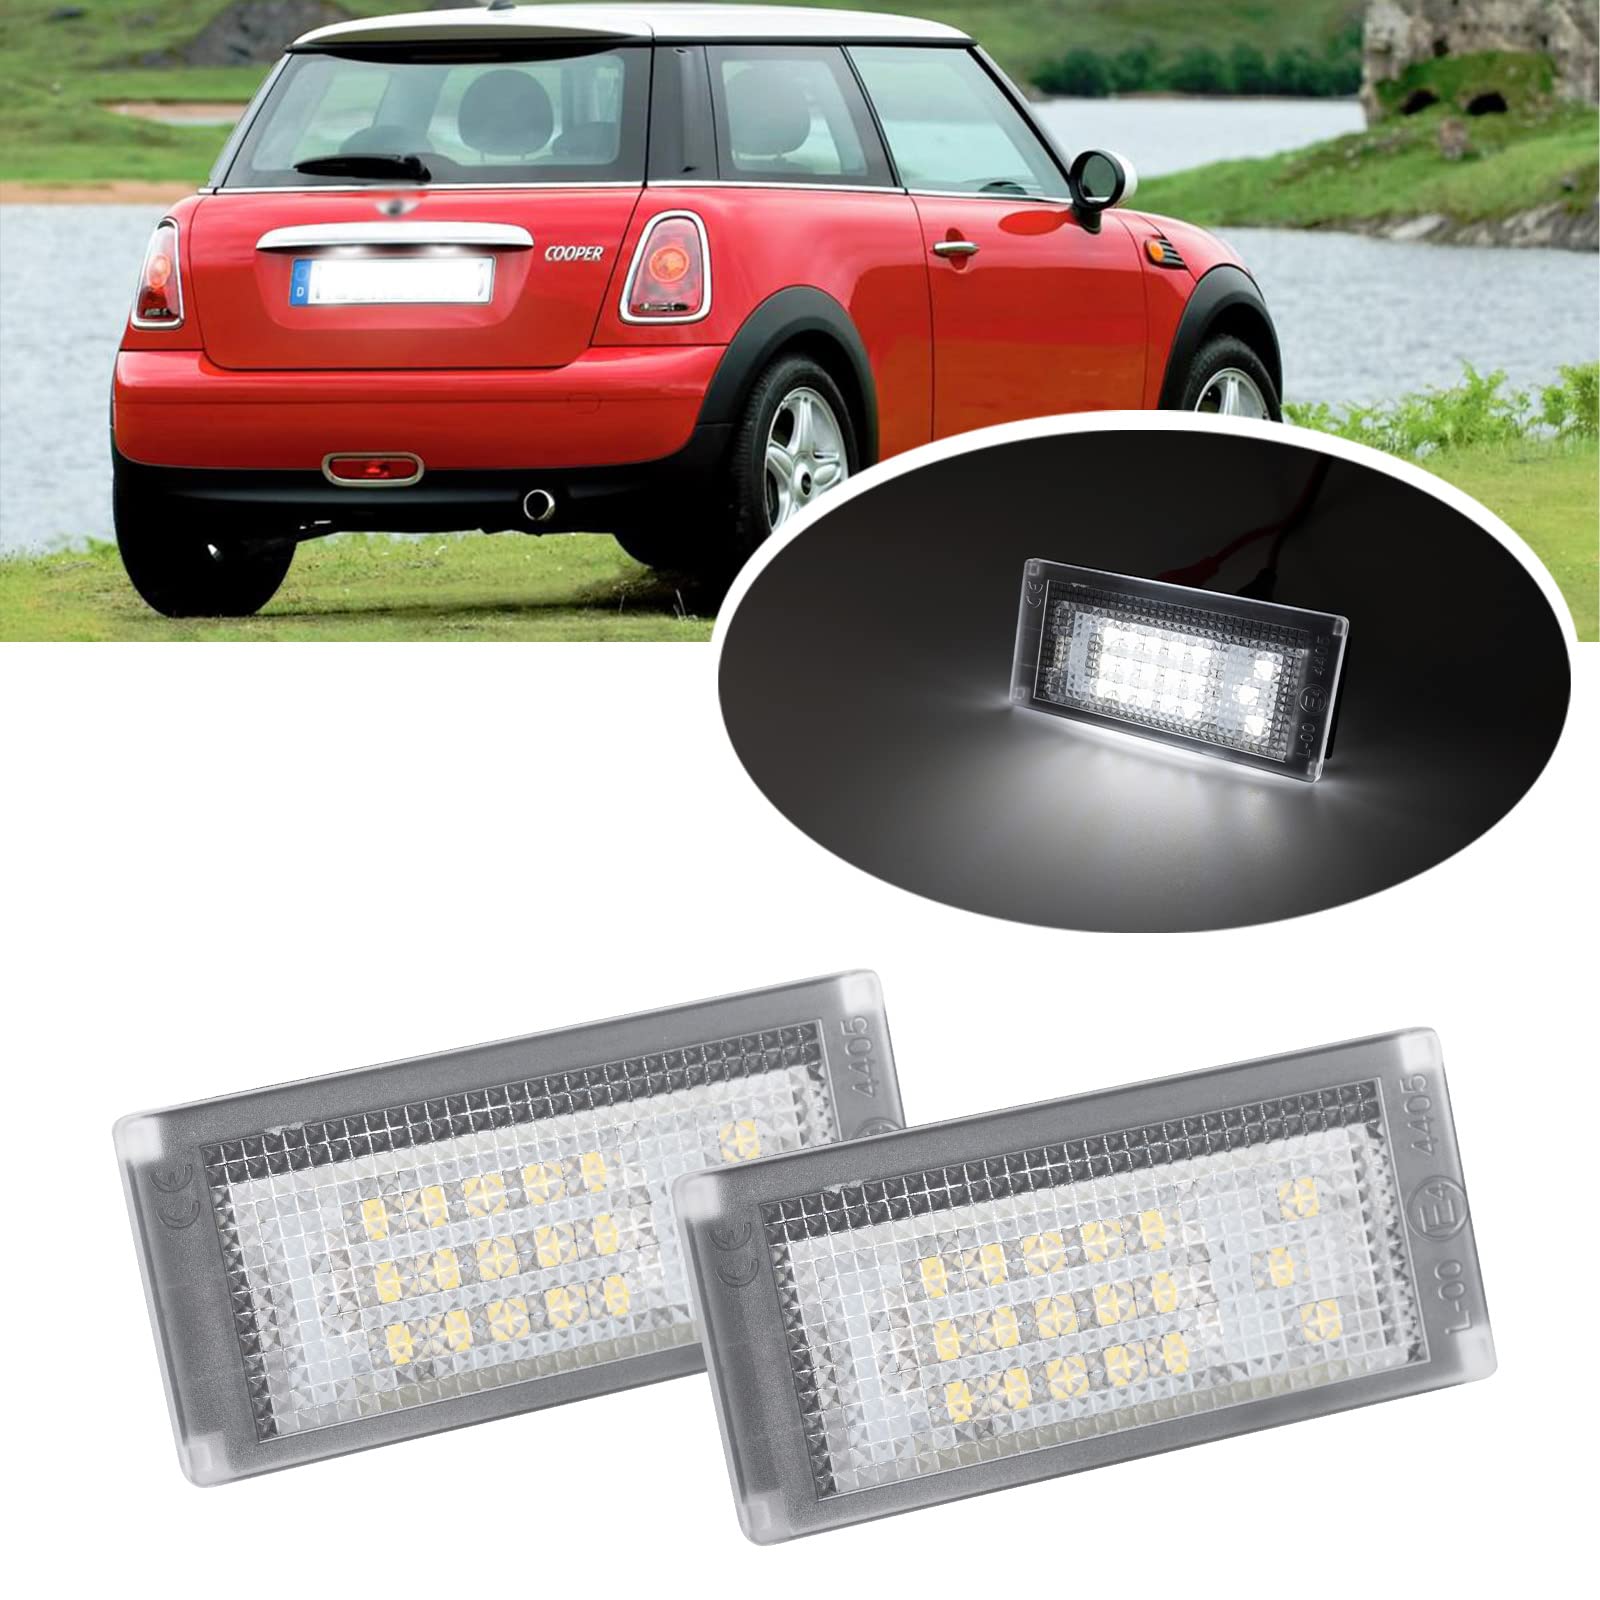 njssjd 2pcs Auto LED Kennzeichenbeleuchtung für Mini Cooper S R50 R52 R53 Weiß SMD Canbus Fehlerfreie LED Tag Lampe von njssjd